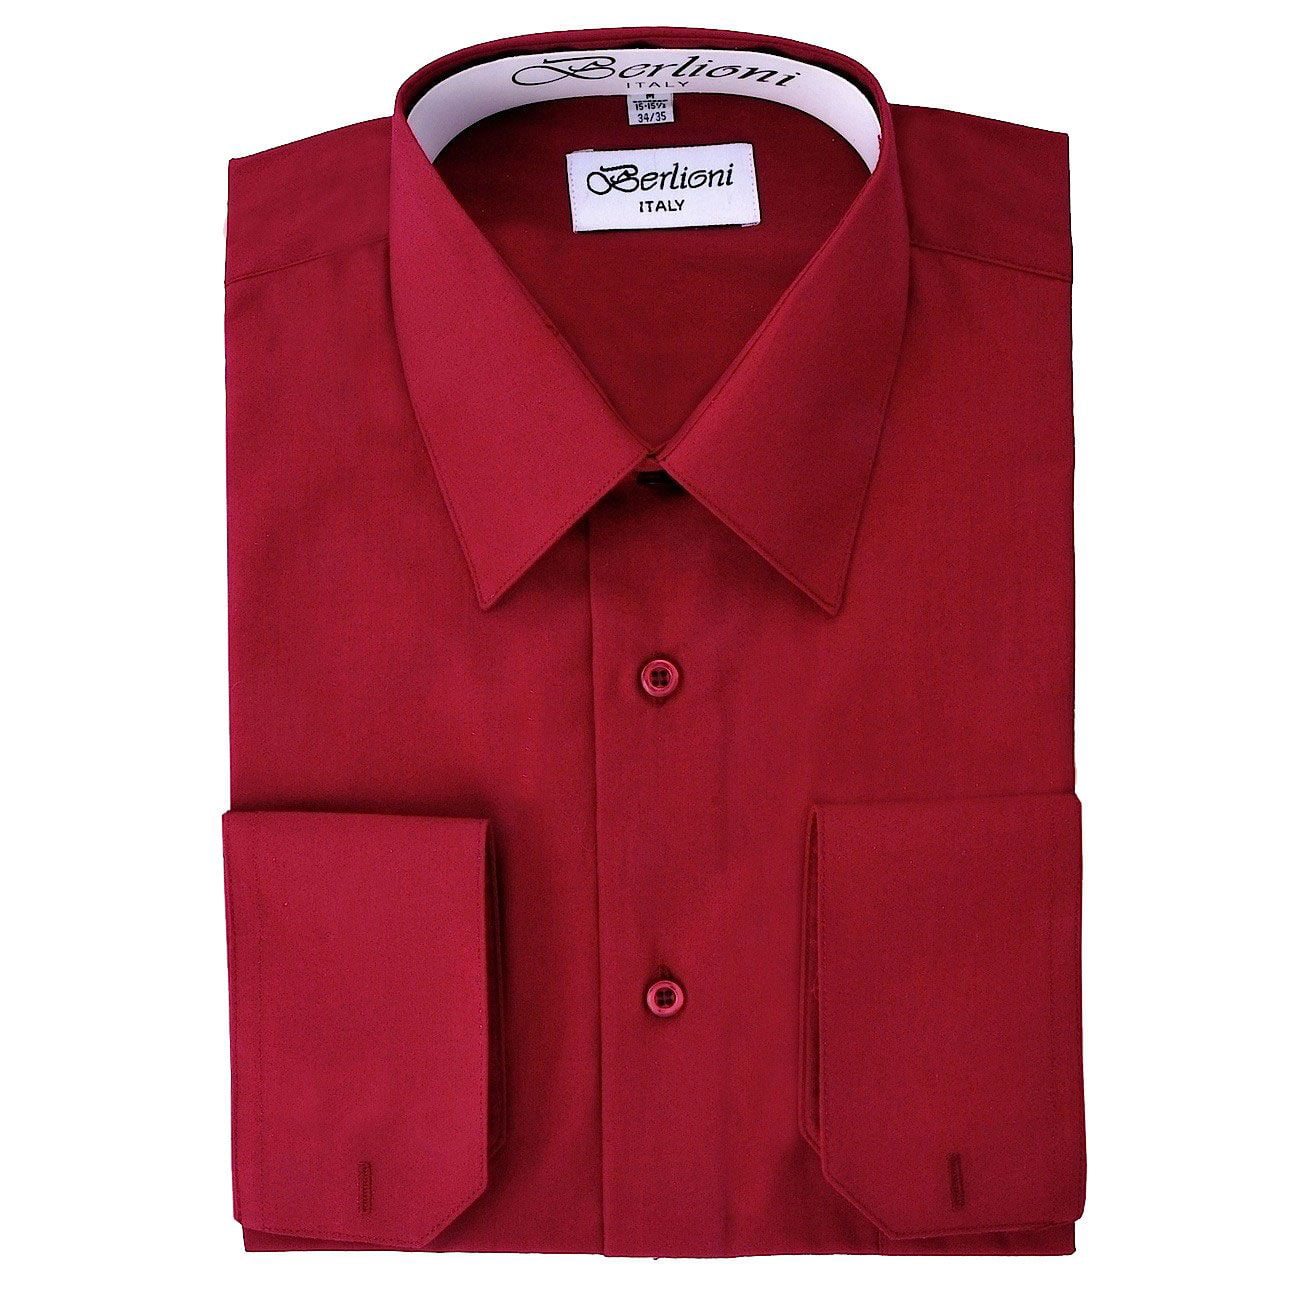 Men's Solid Color Dress Shirt - Walmart.com